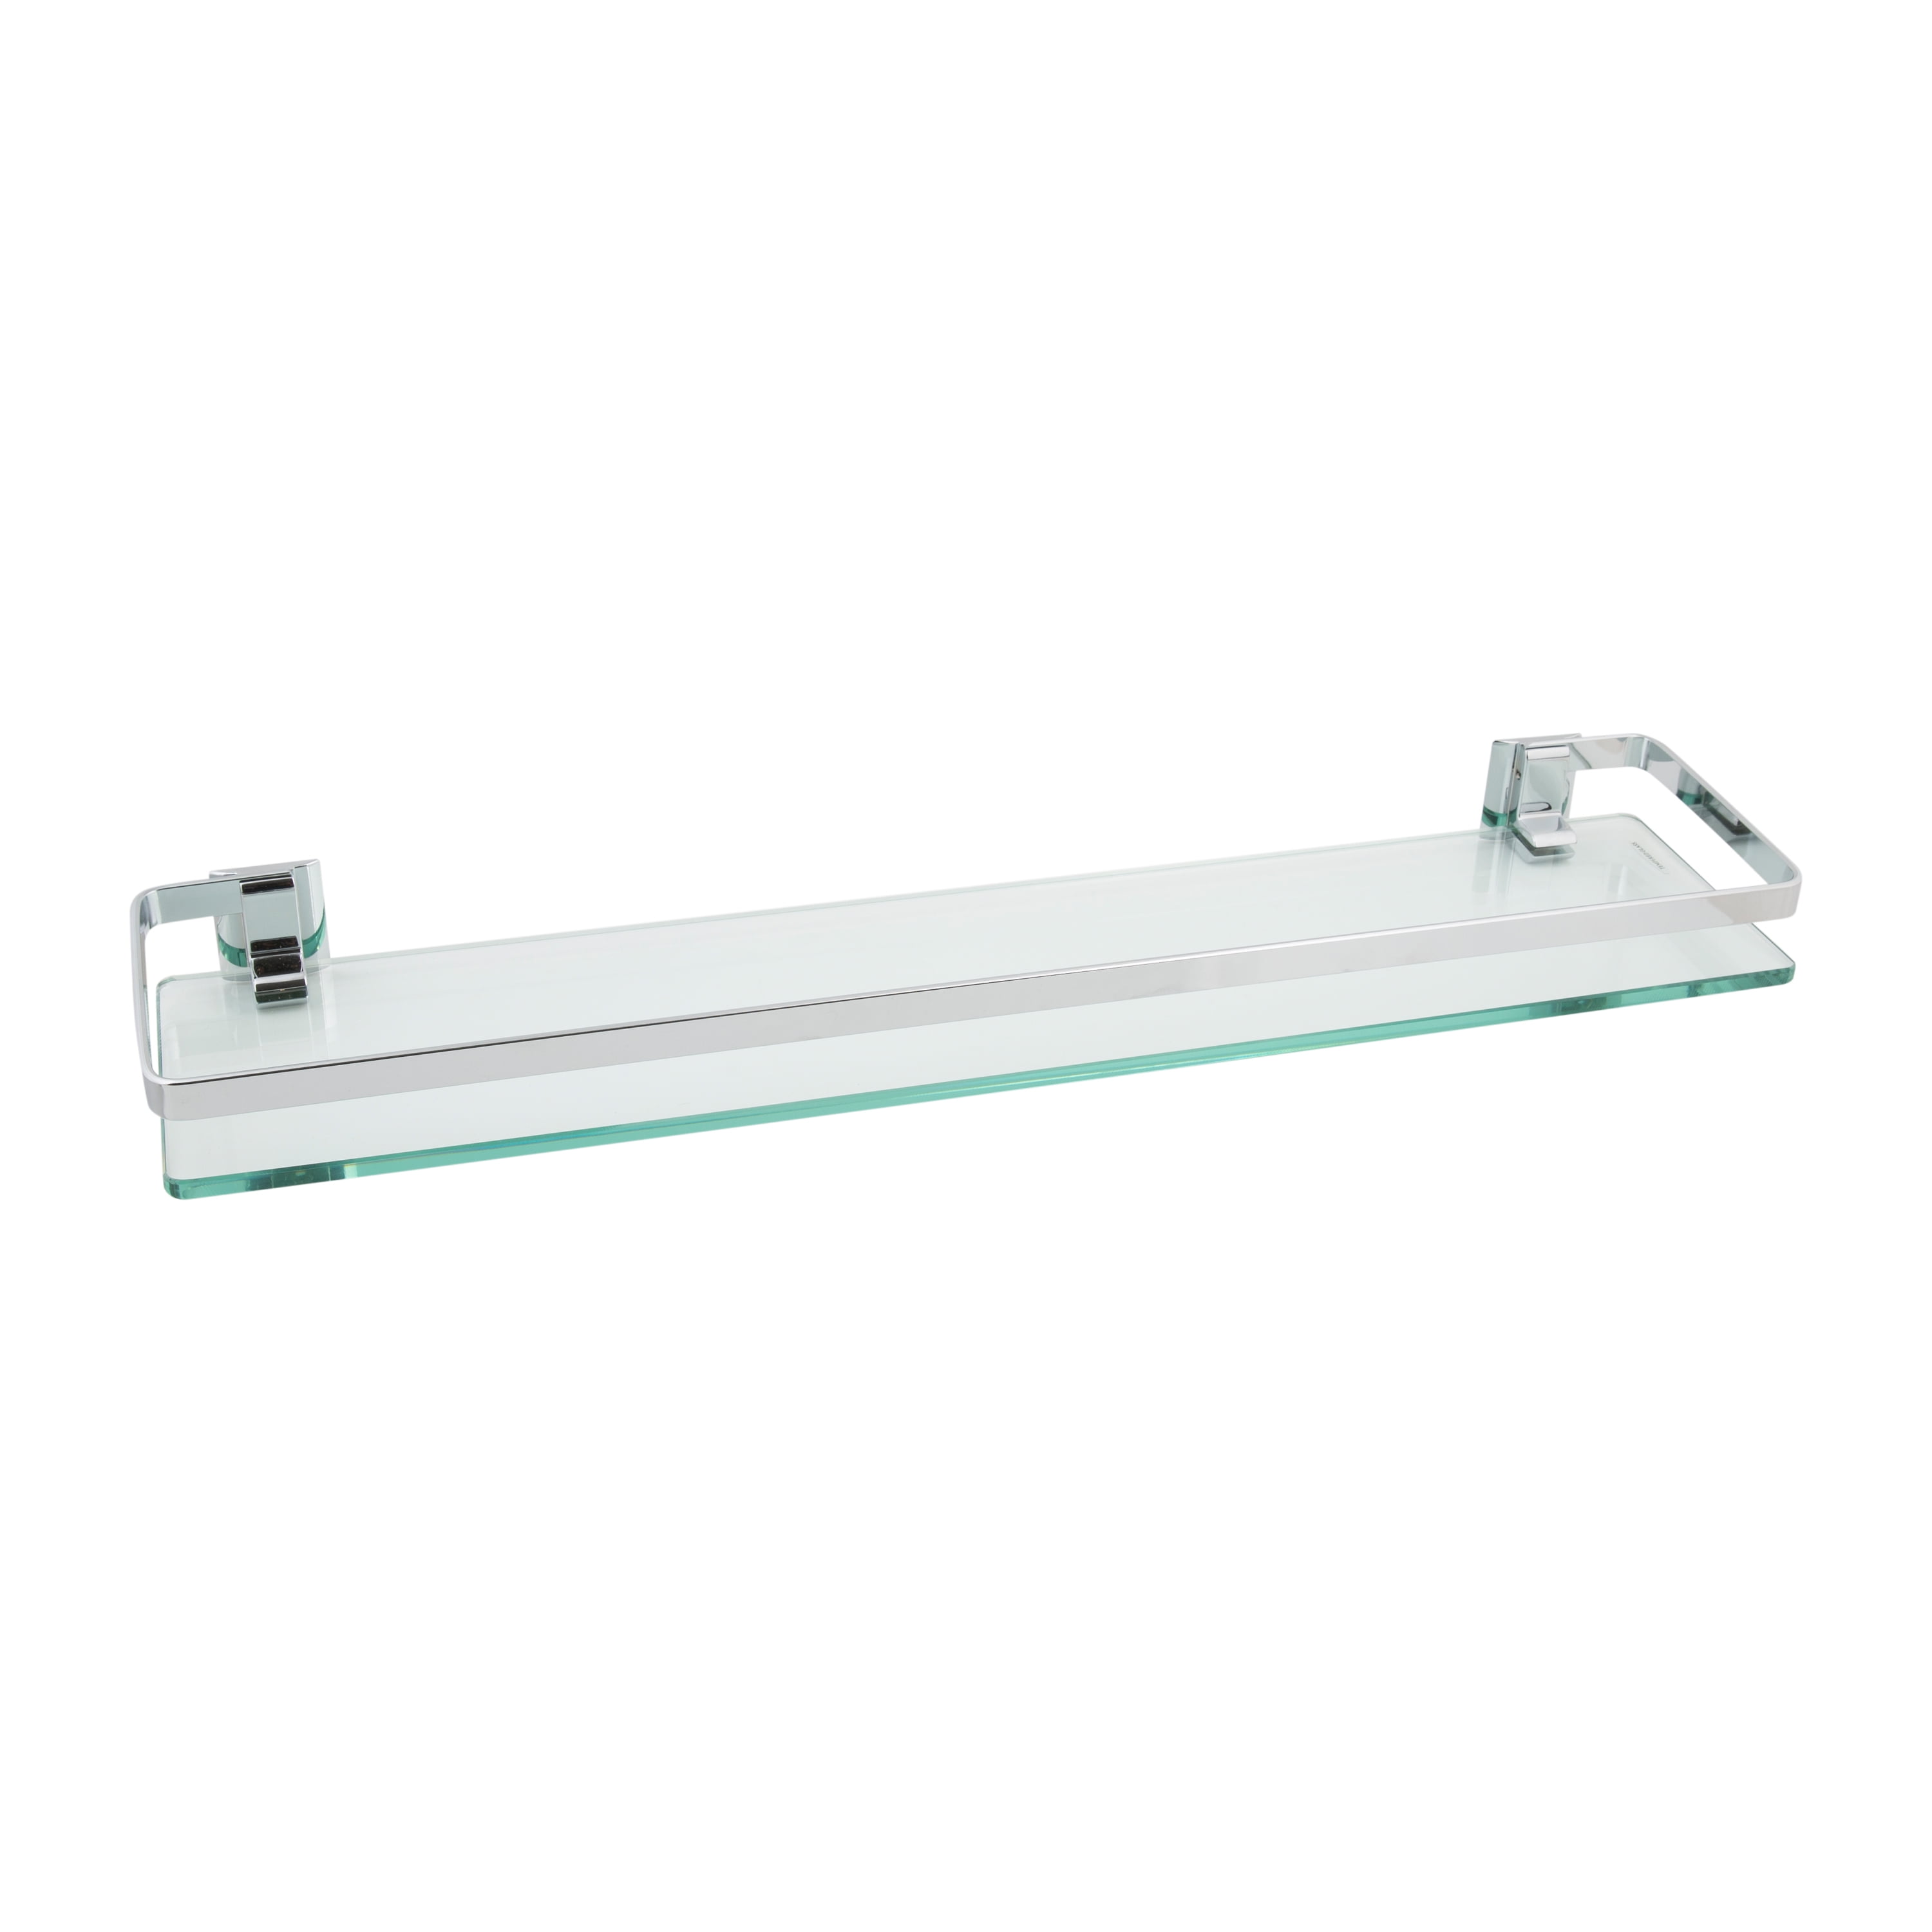 Neu Home Wall Mounted Glass Shelf With, Bathroom Shelves Glass Chrome